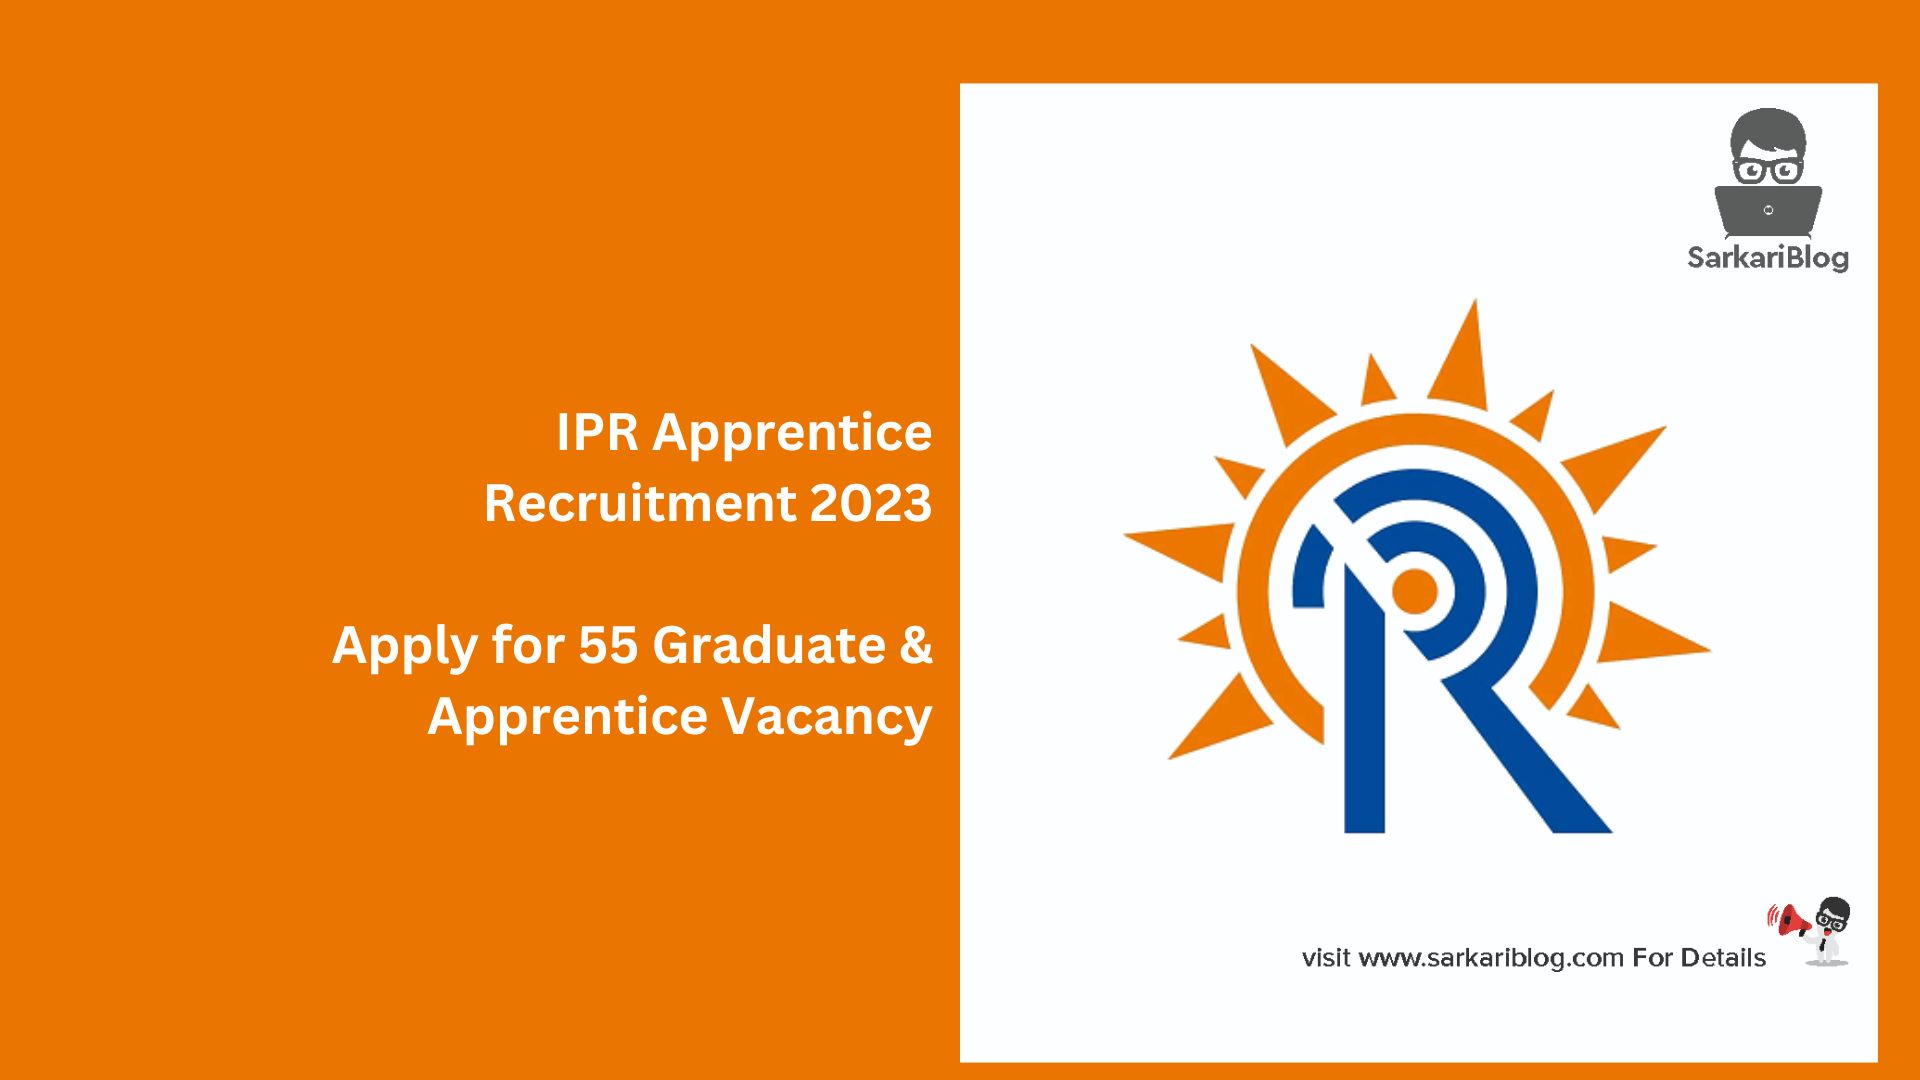 IPR Apprentice Recruitment 2023